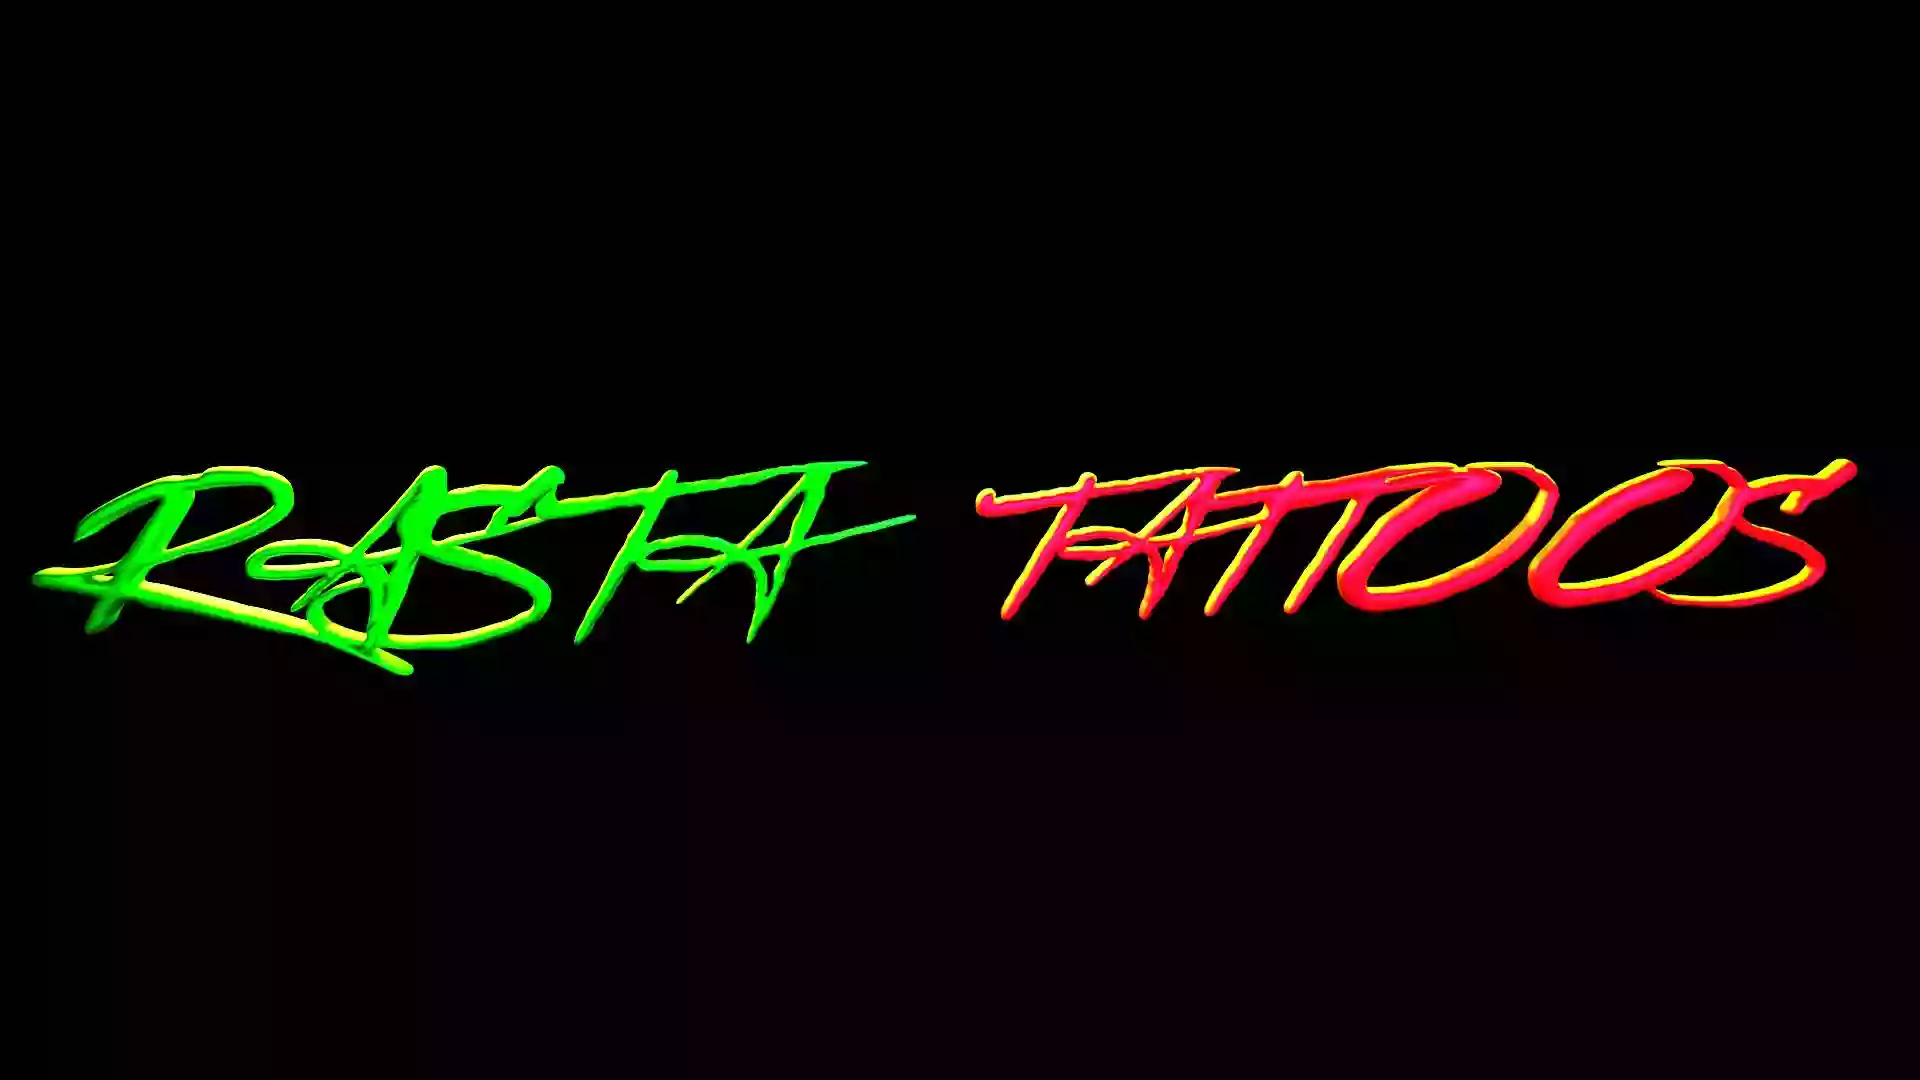 Rasta Tattoos LLC